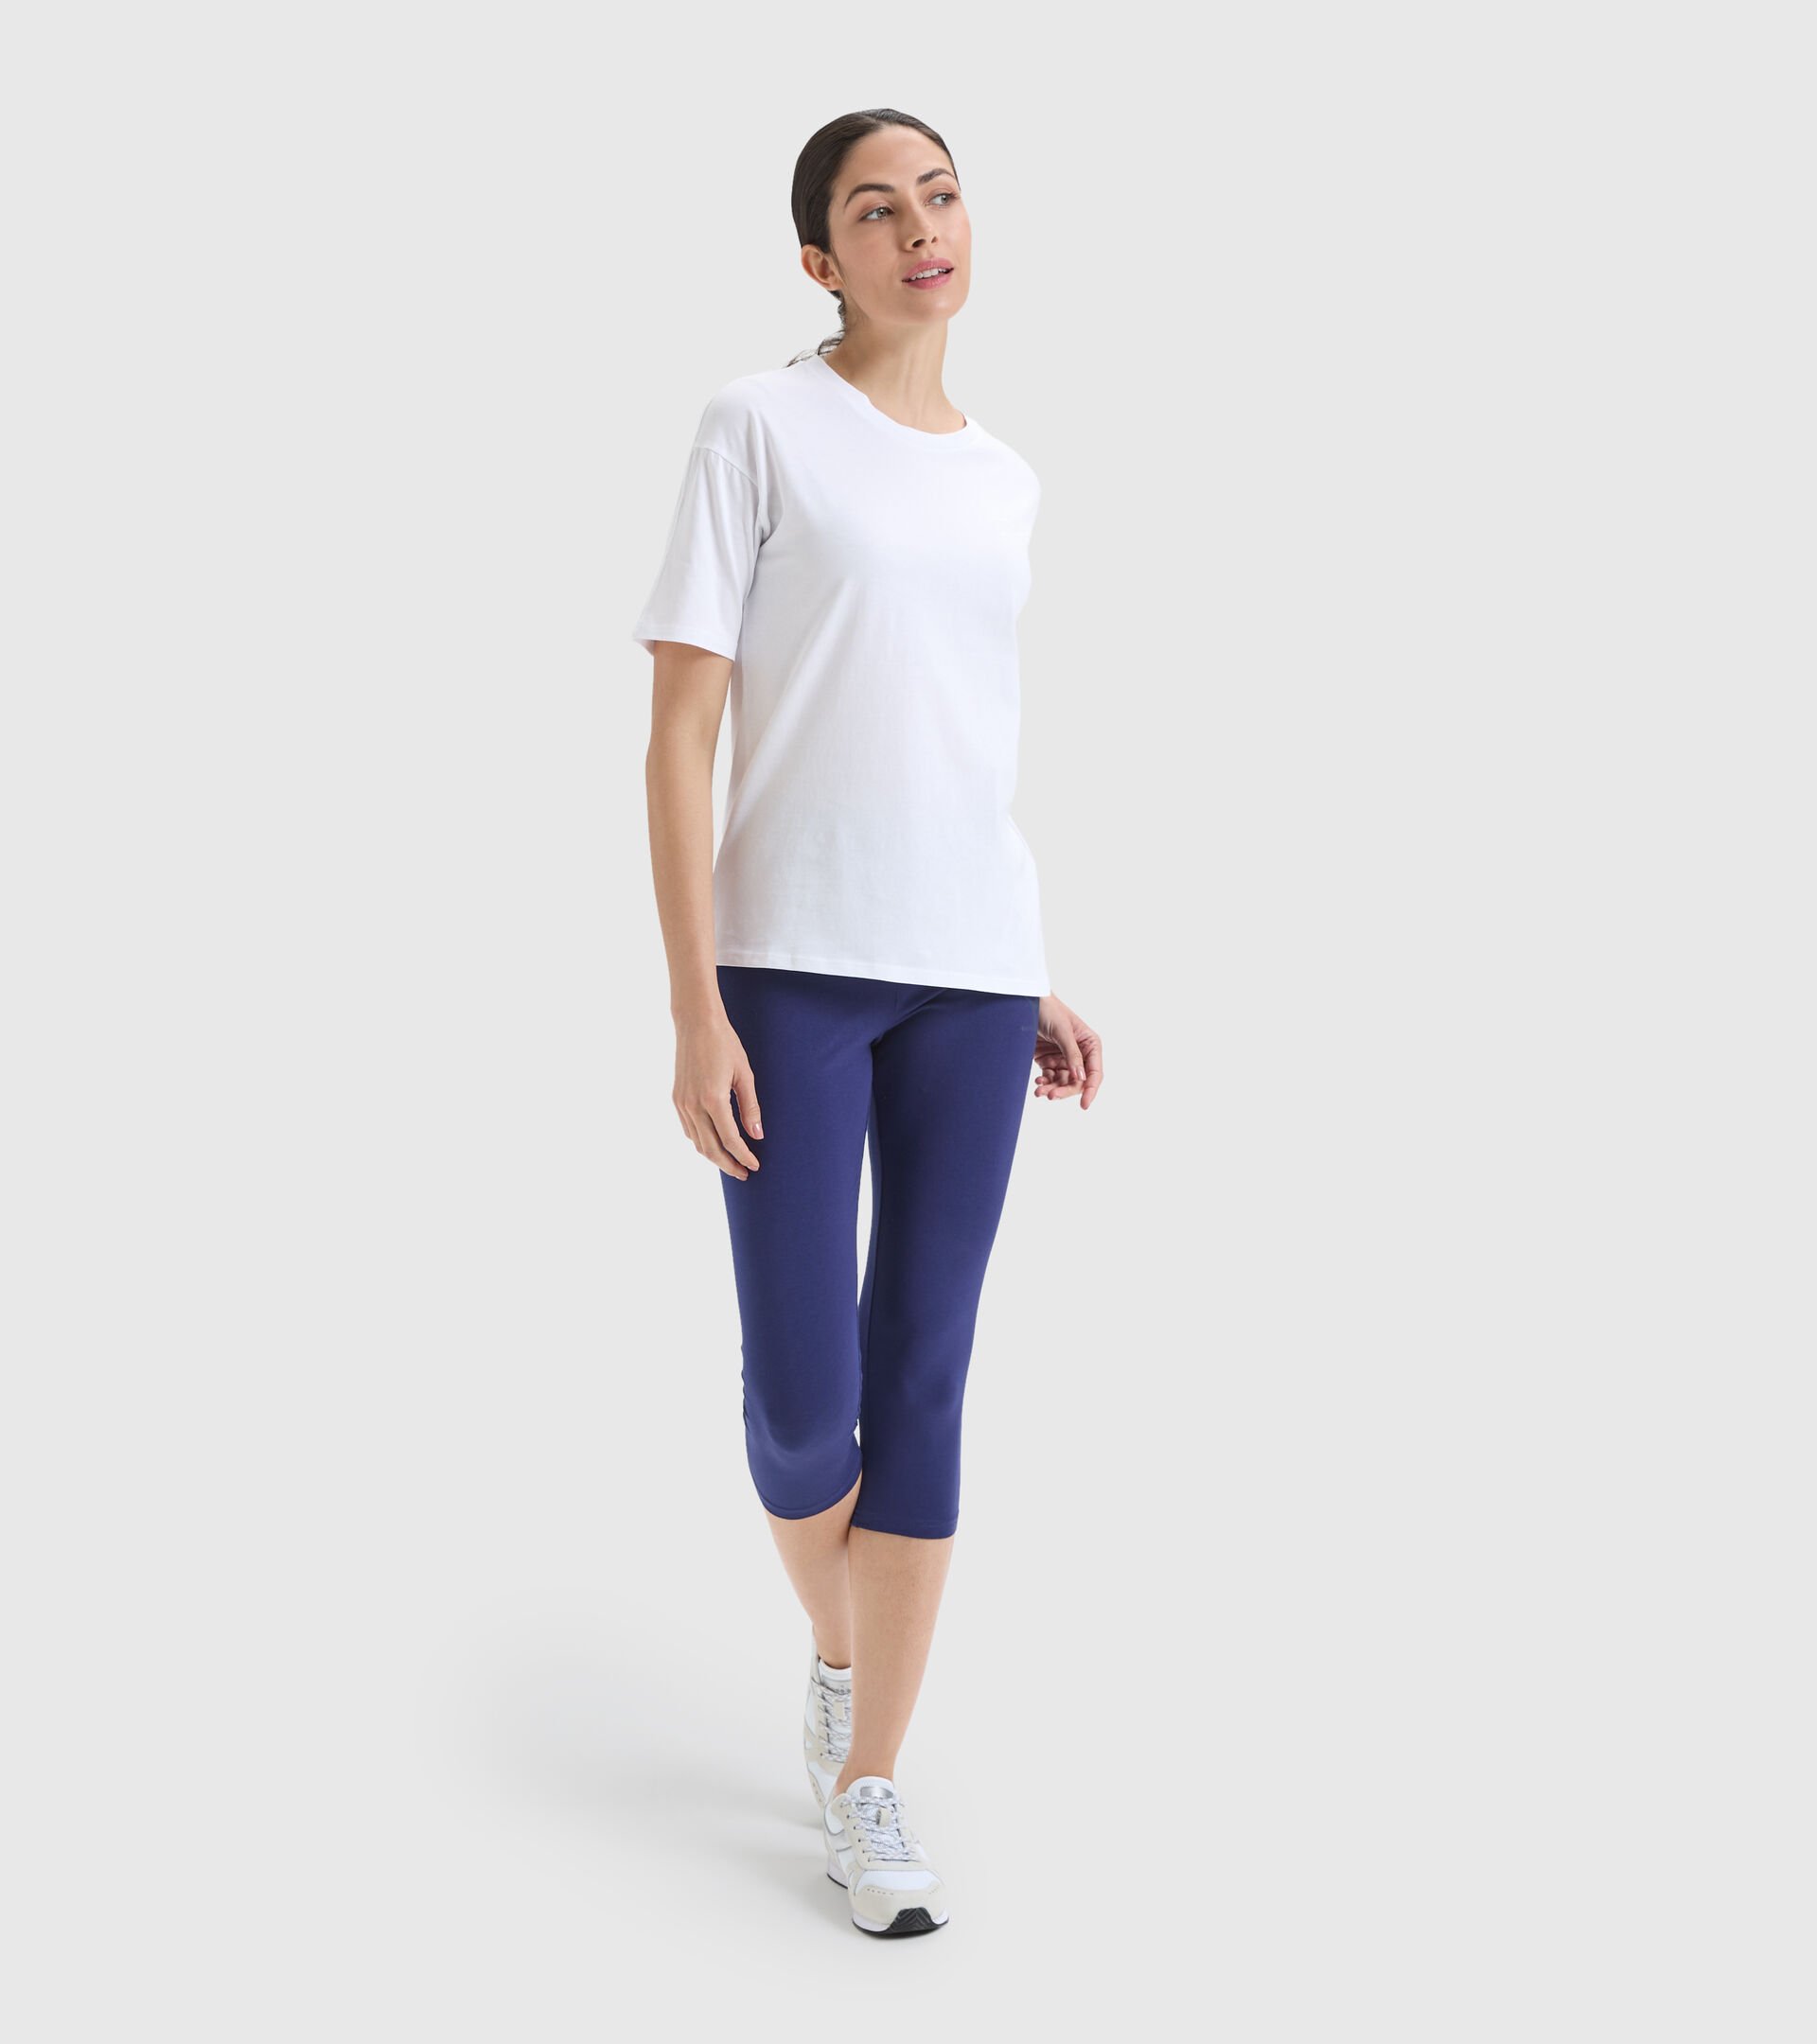 Camiseta deportiva de algodón - Mujer L.T-SHIRT SS CHROMIA BLANCO VIVO - Diadora